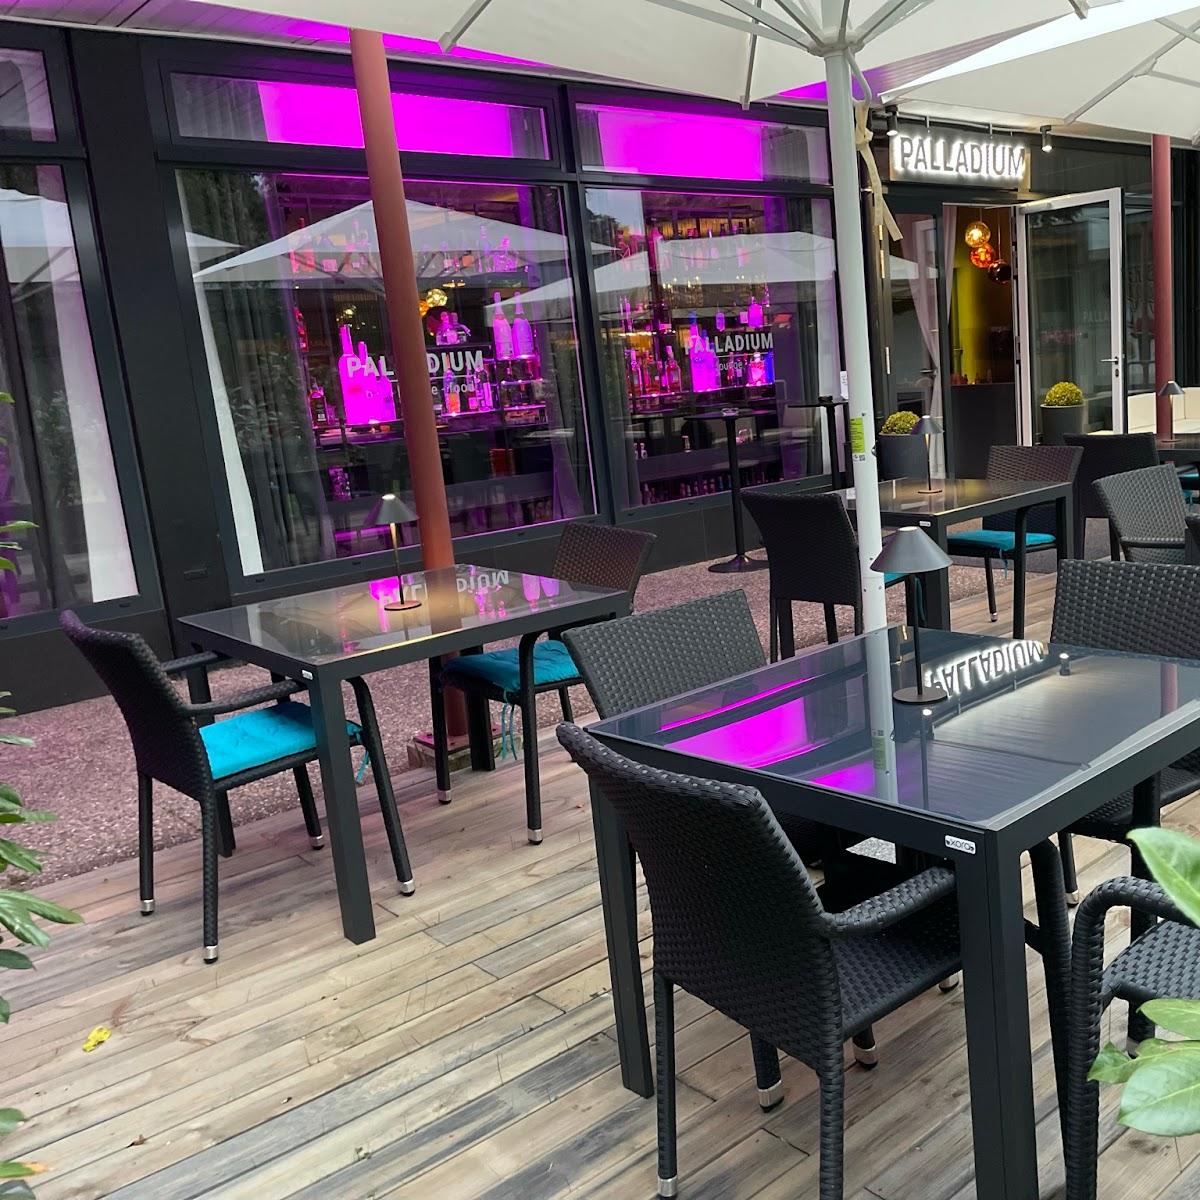 Restaurant "Palladium bar-lounge-food" in Offenburg